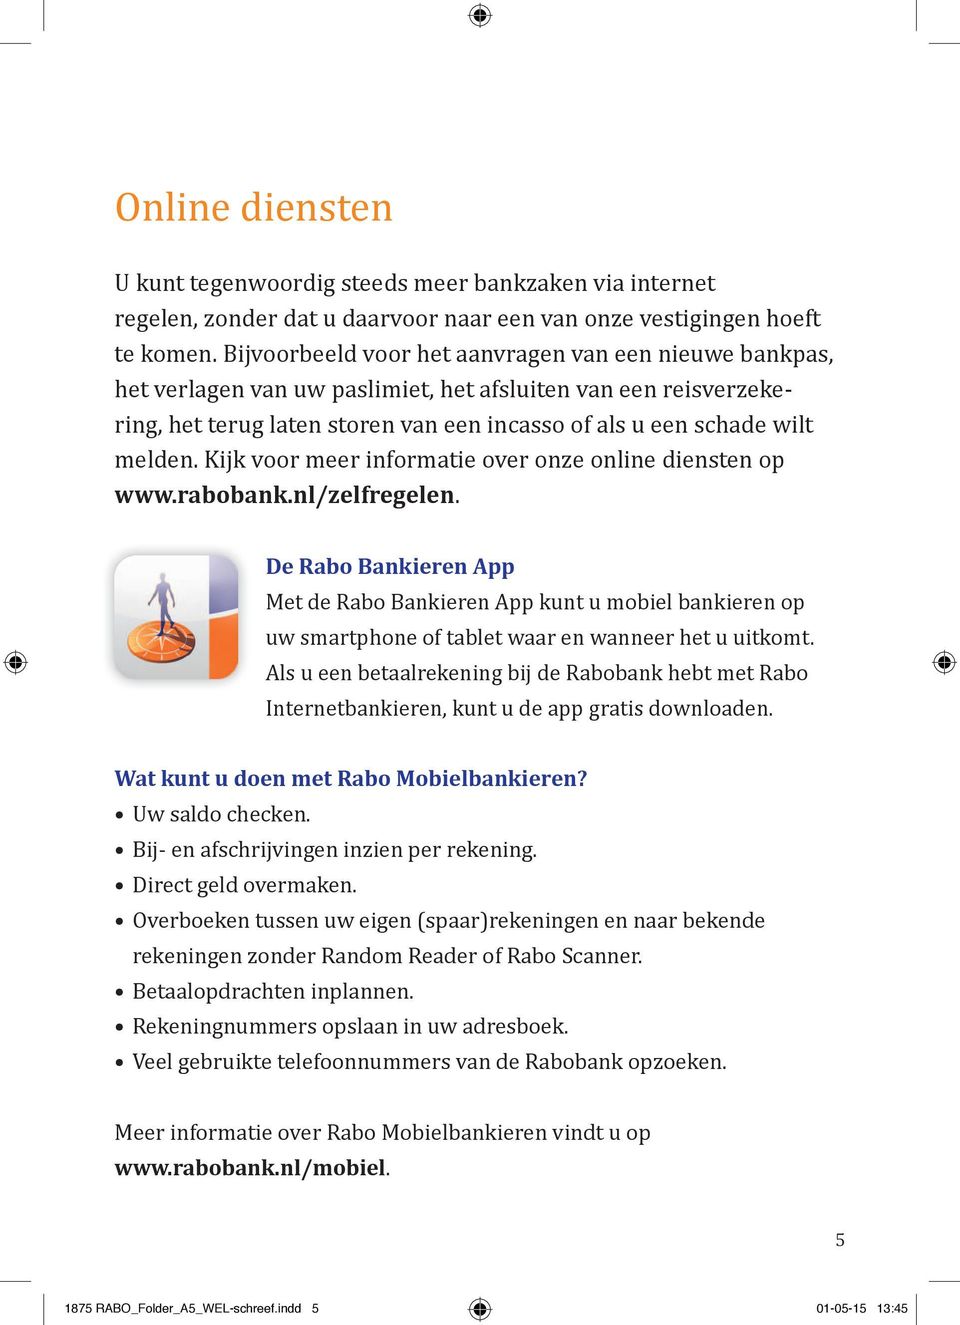 Kijk voor meer informatie over onze online diensten op www.rabobank.nl/zelfregelen.